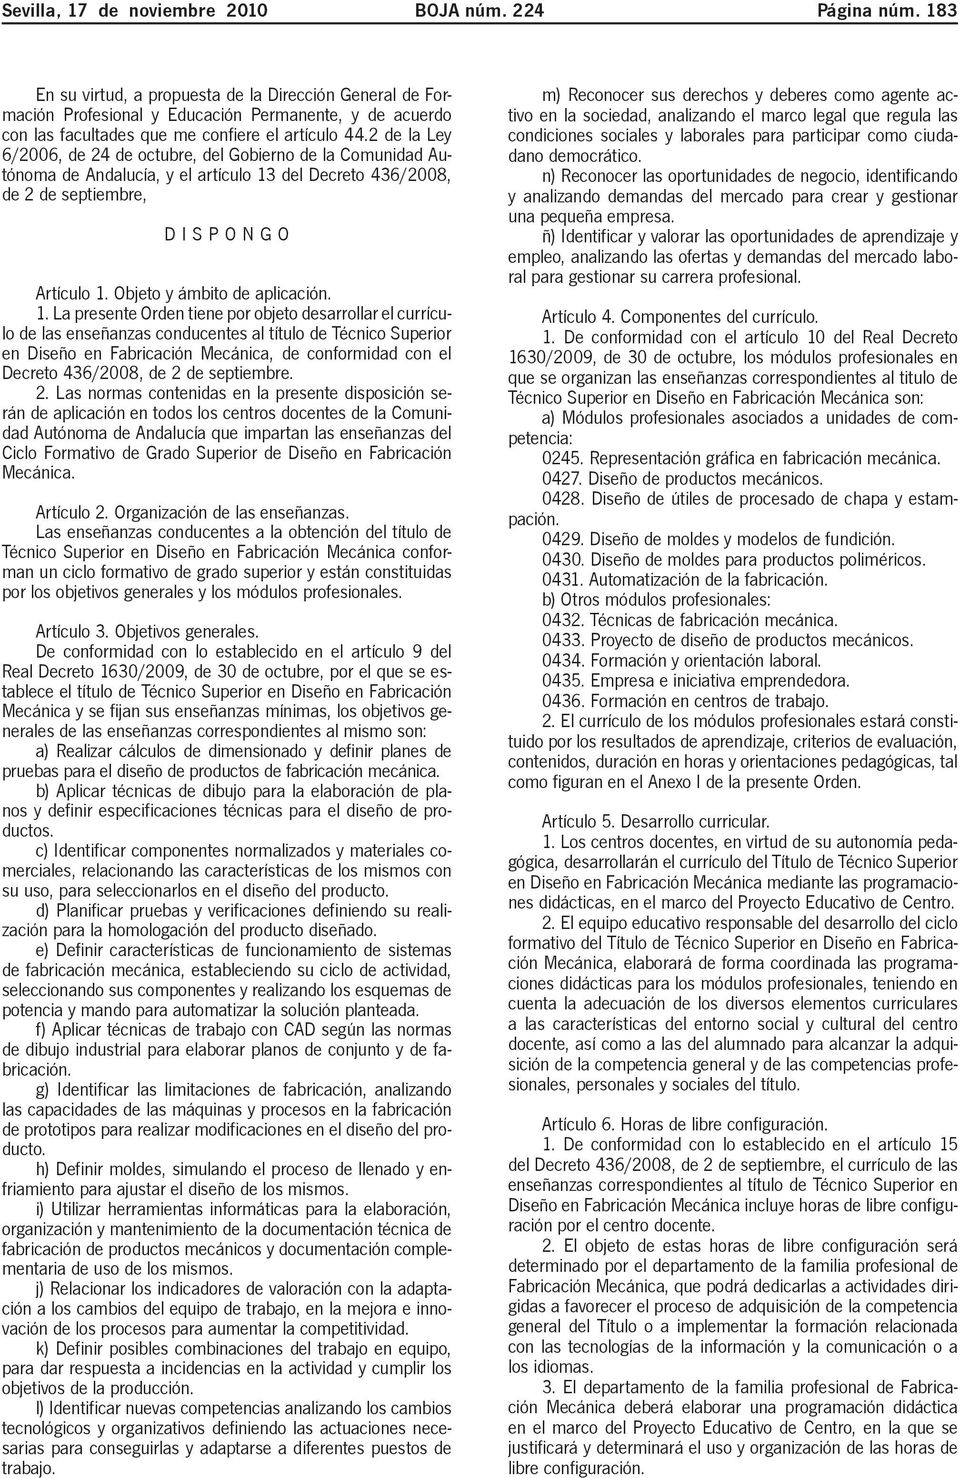 2 de la Ley 6/2006, de 24 de octubre, del Gobierno de la Comunidad Autónoma de Andalucía, y el artículo 13 del Decreto 436/2008, de 2 de septiembre, DISPONGO Artículo 1. Objeto y ámbito de aplicación.